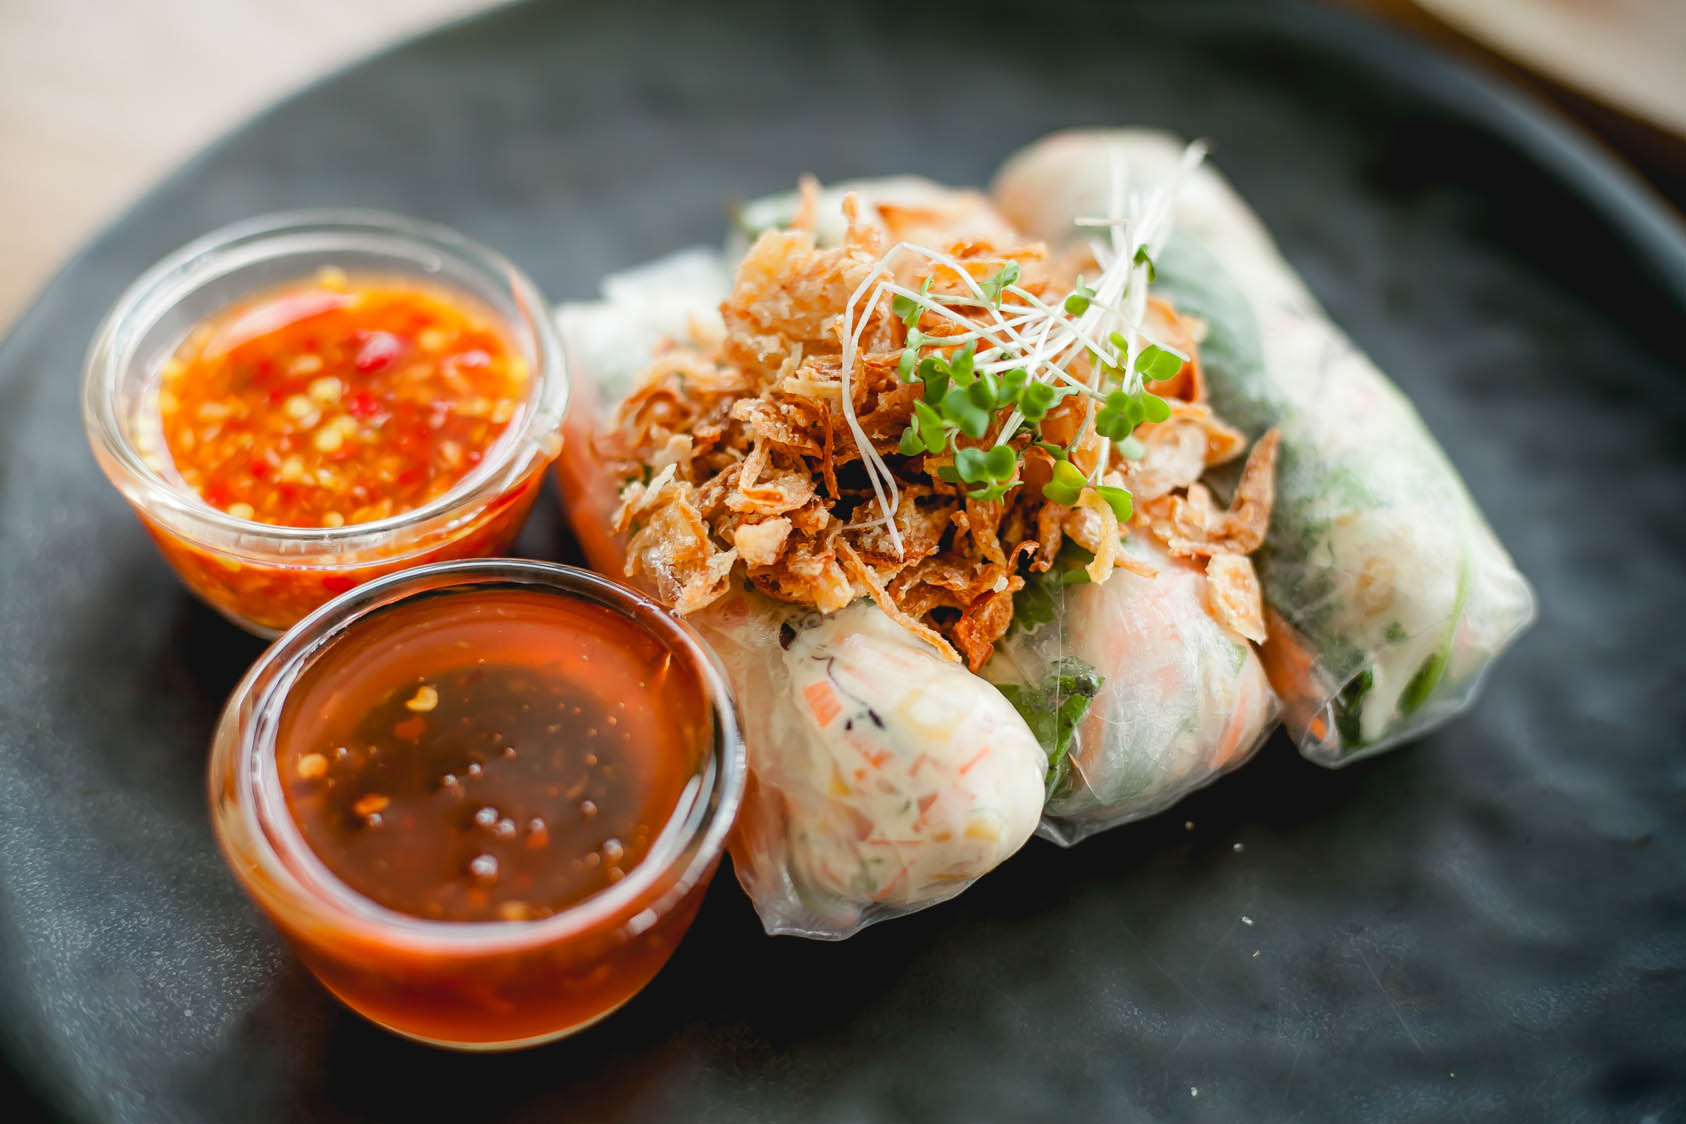 Taste of Vietnam | 12 Days